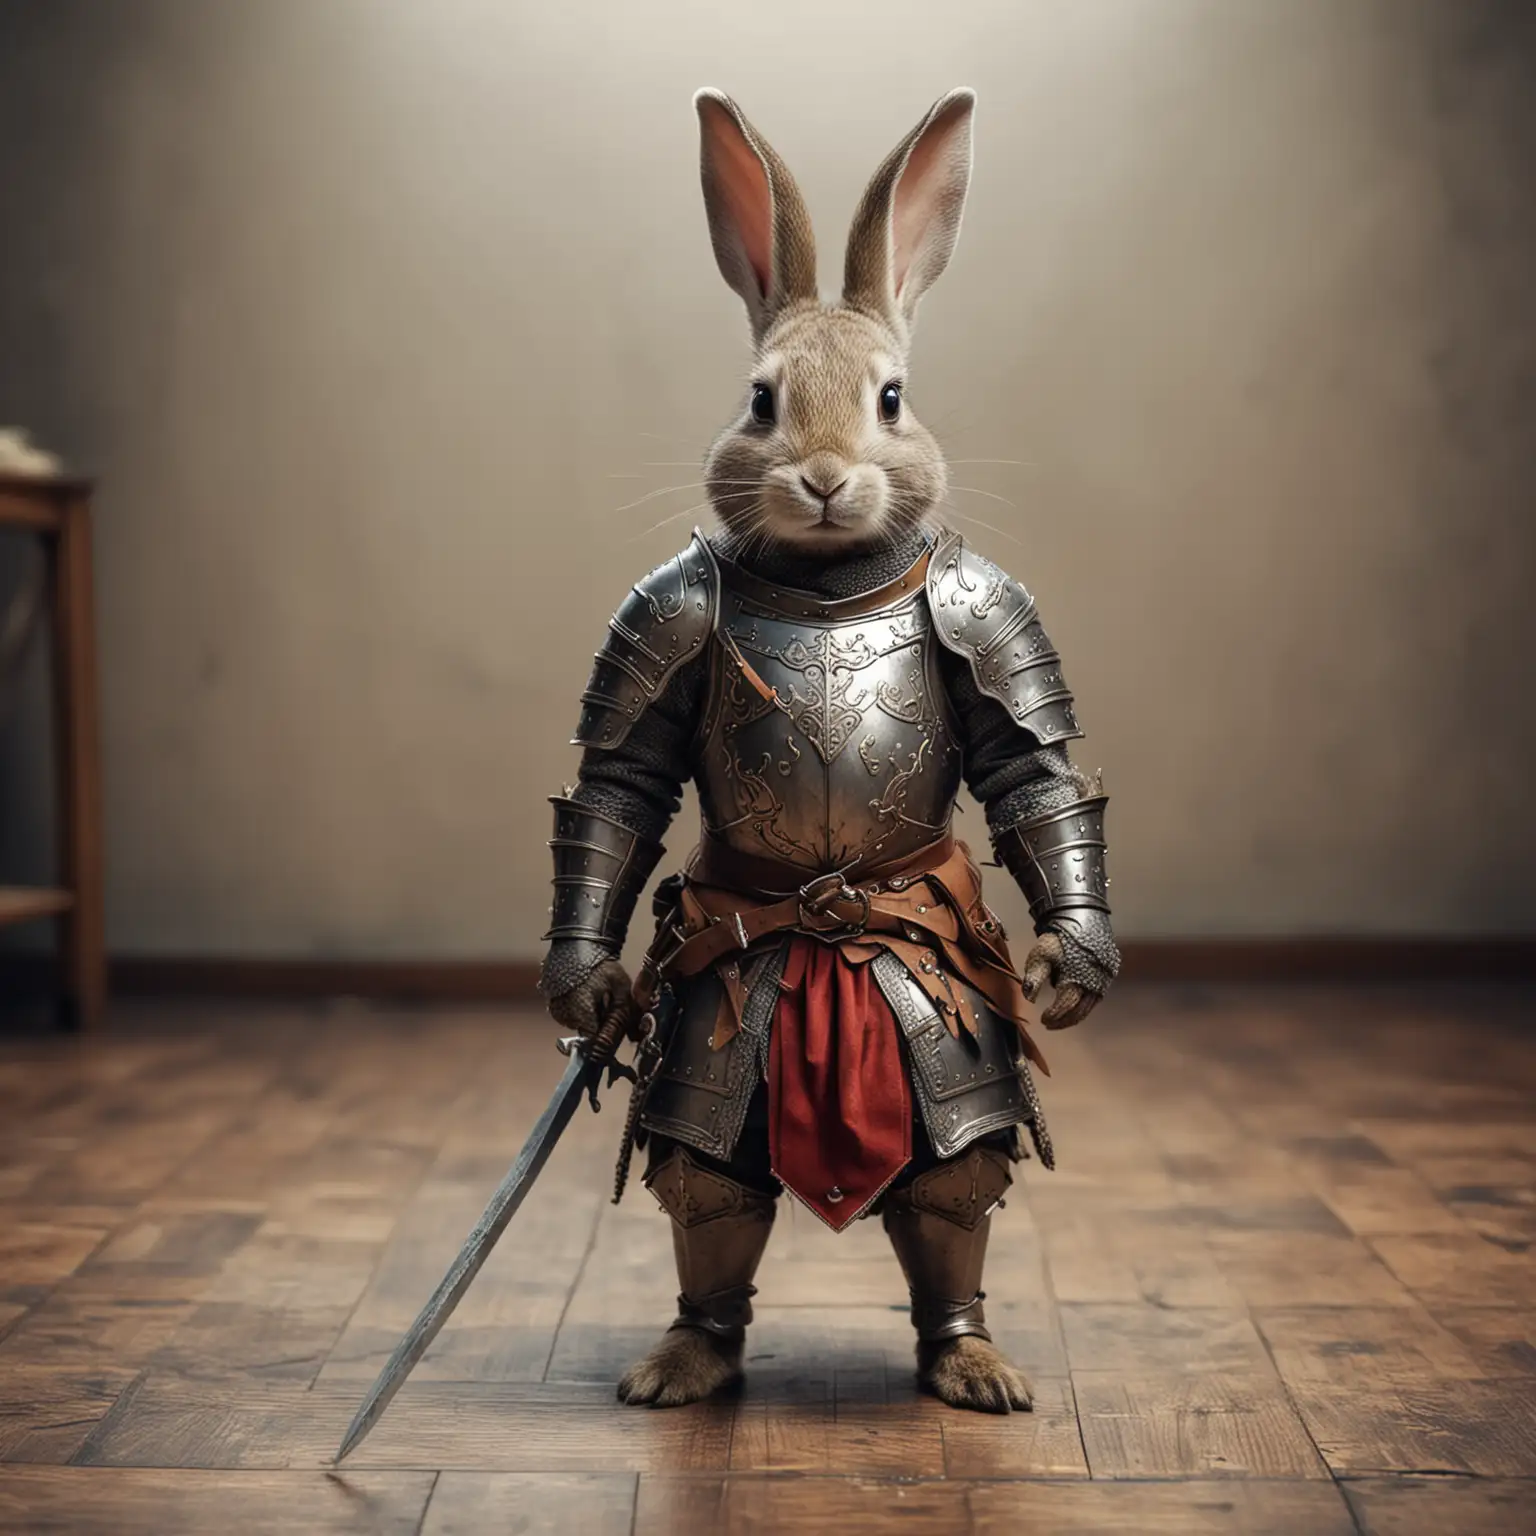 милый невысокий кролик-воин в средневековой броне в полный рост стоит на полу